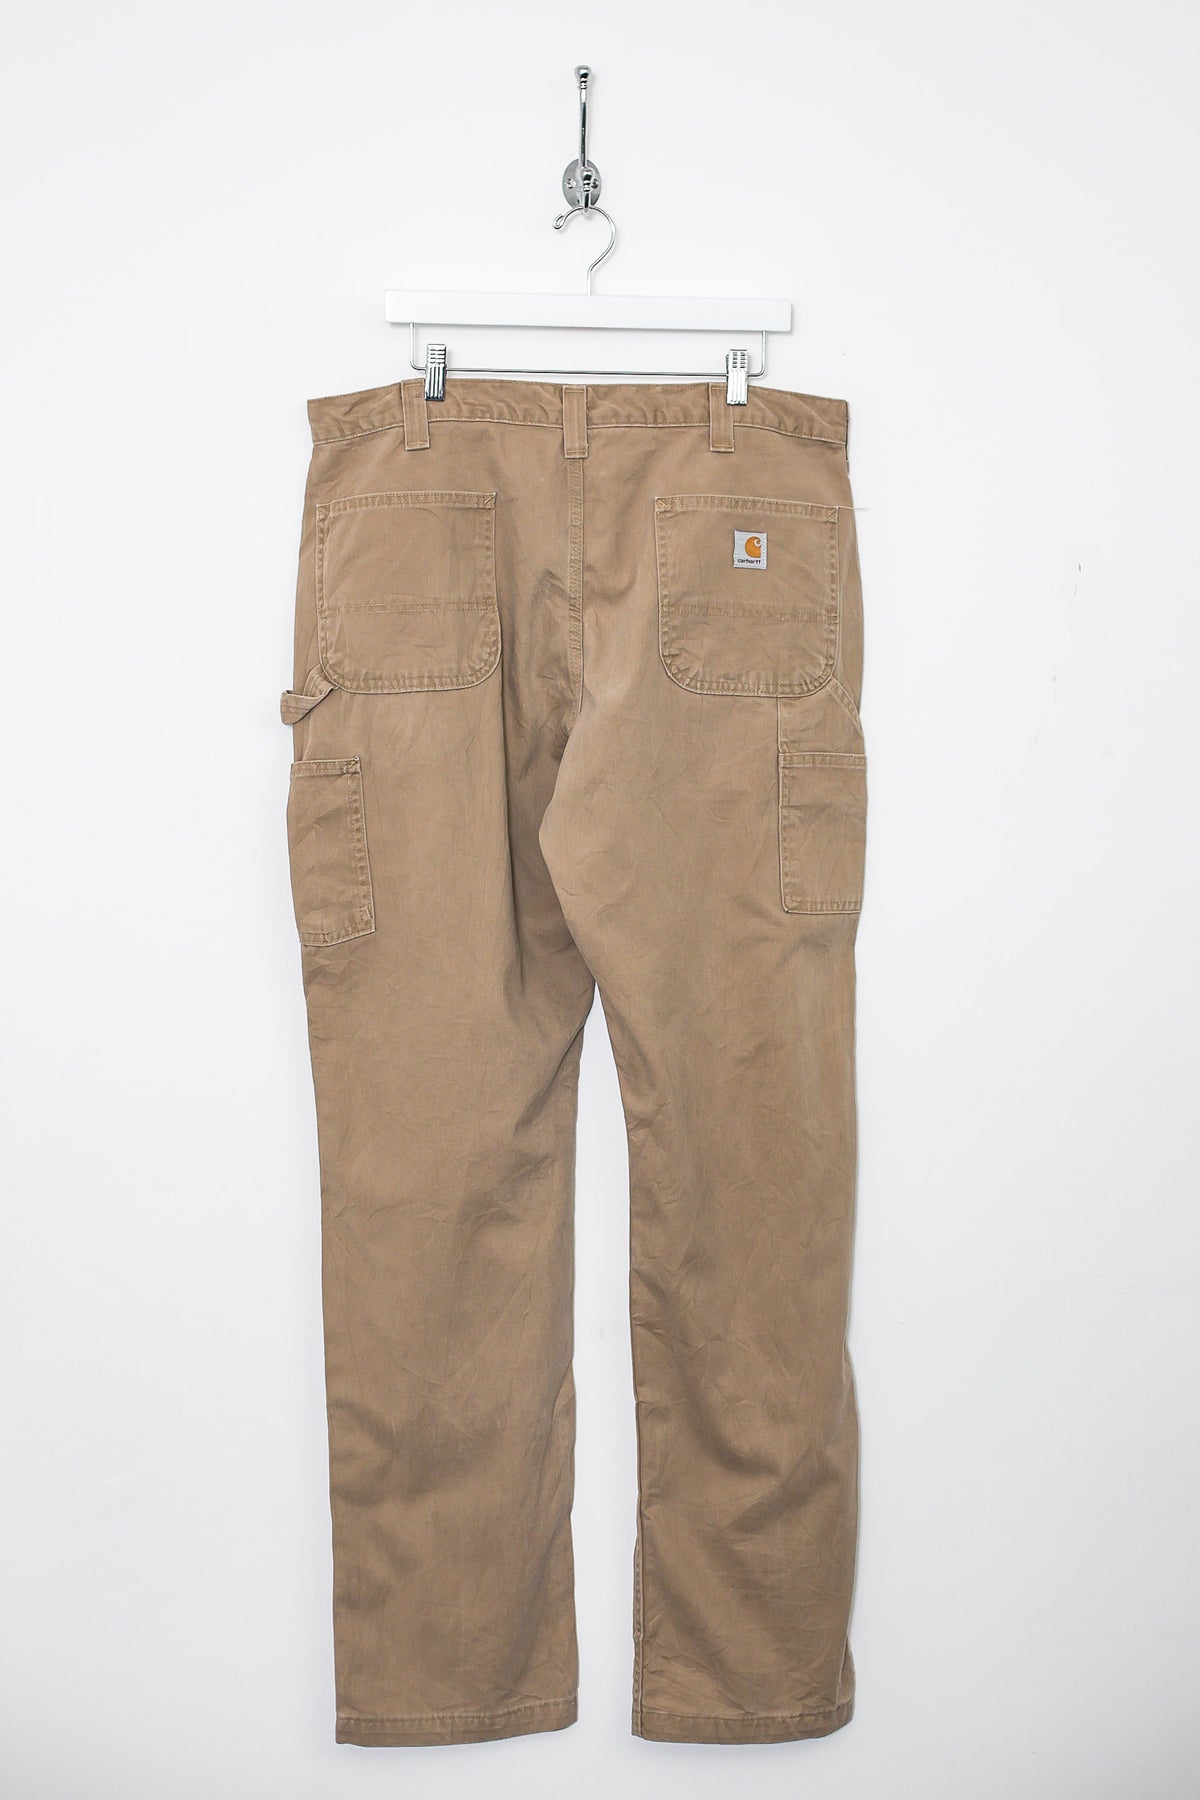 00s Carhartt Carpenter Trousers (XL)